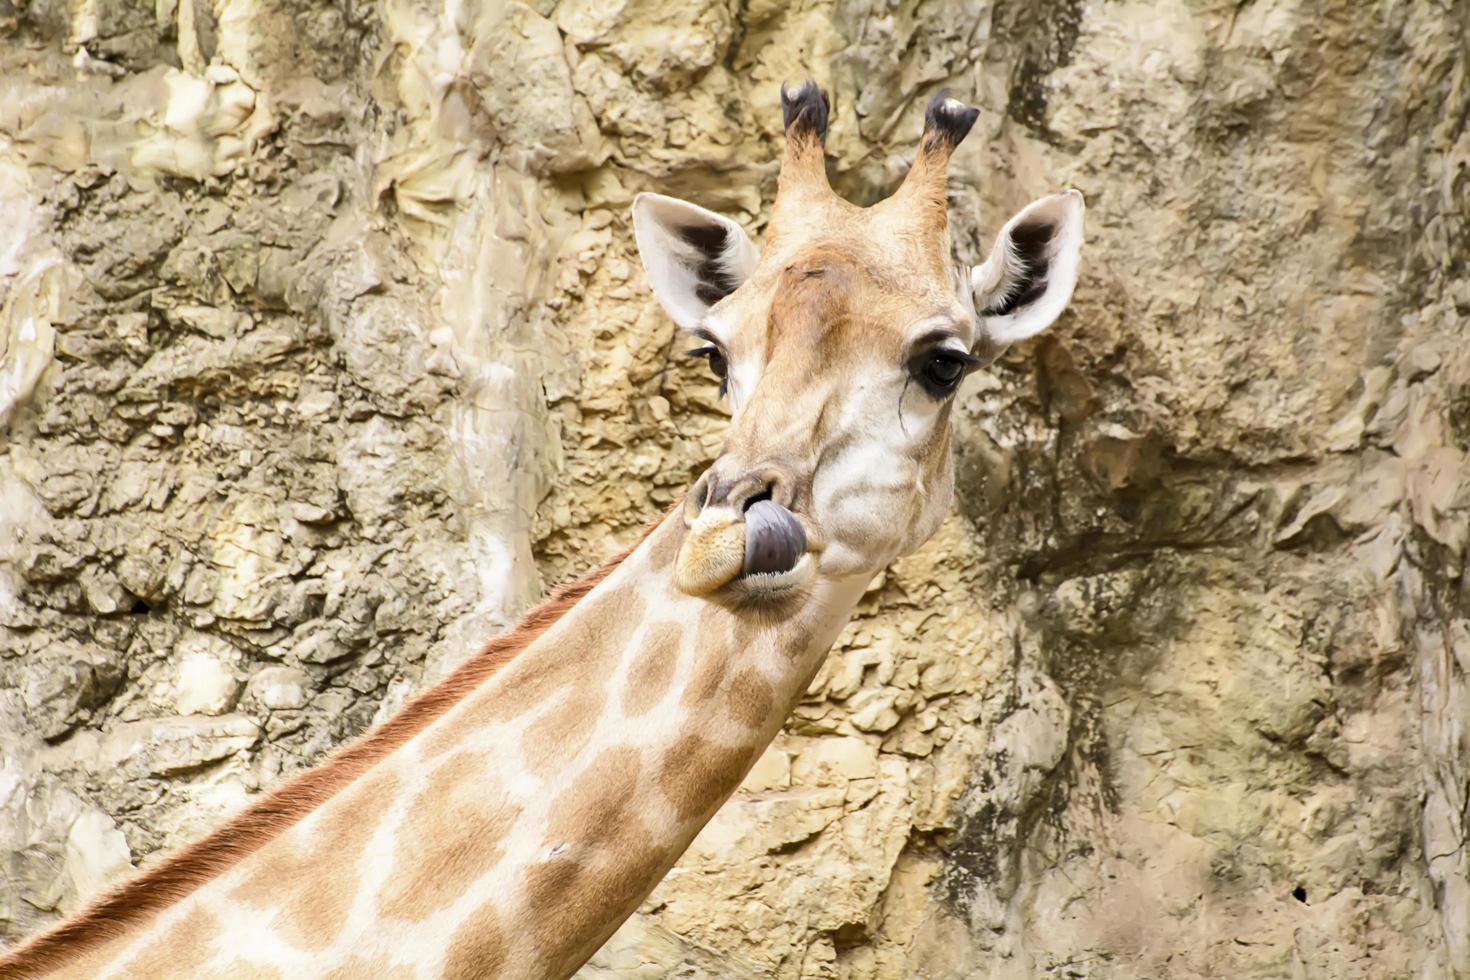 un primer plano de jirafa en un zoológico foto